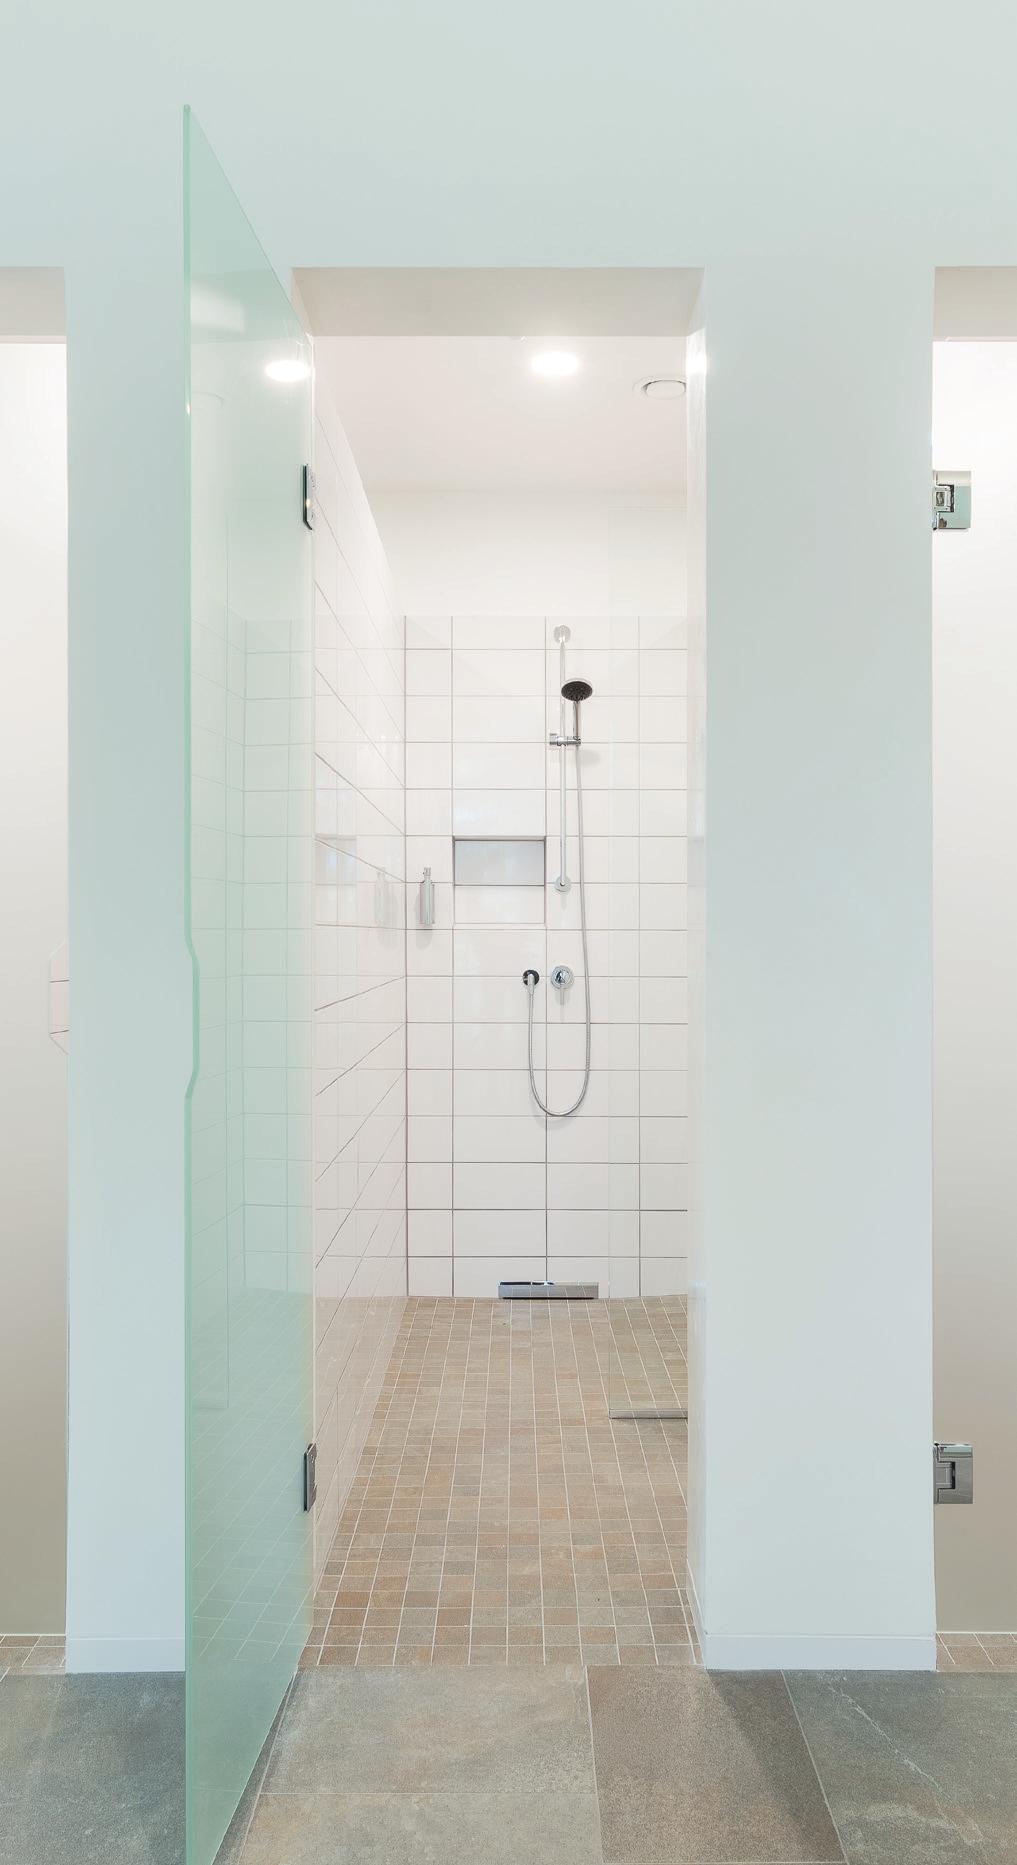 Da Toiletten und Kabinen durch Wände getrennt sind, muss daher eine sehr individuelle Lichtlösung gefunden werden. Präsenzmelder senken den Energieverbrauch.